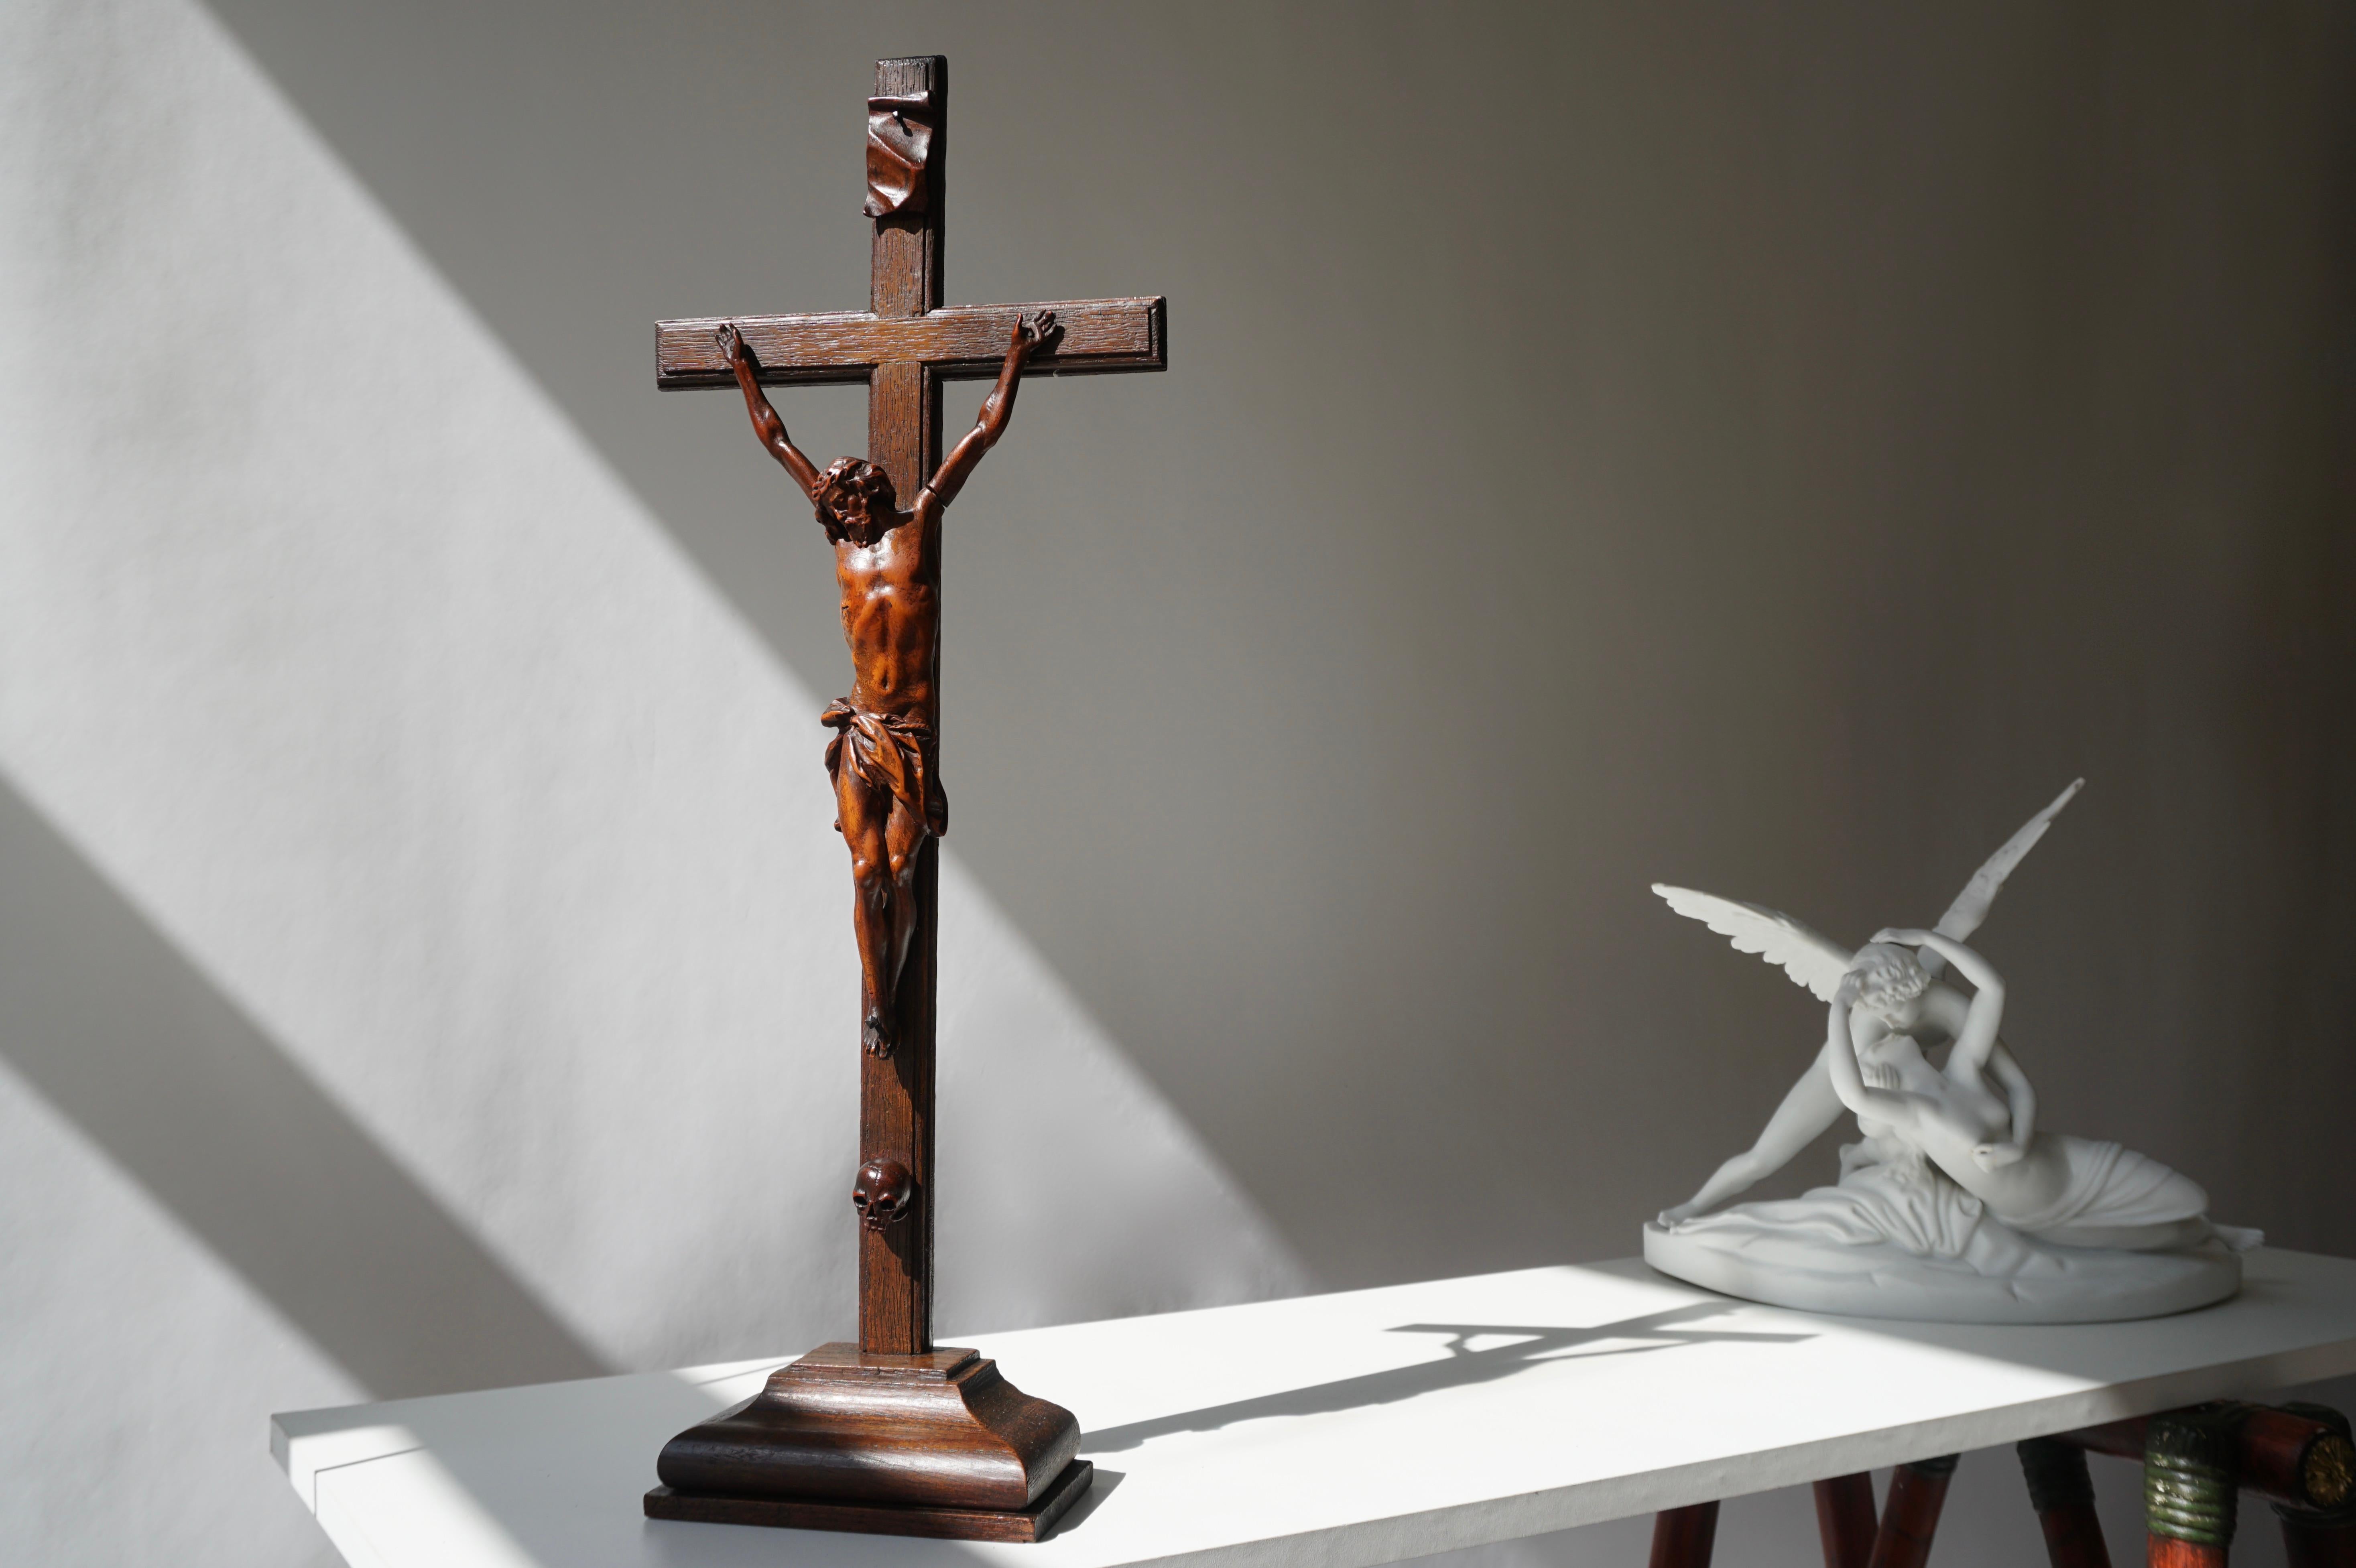 Kruzifix oder Corpus Christi aus Holz aus dem 19. Holzkreuz mit einer schönen Patina und einer exquisiten Form.
Dieser Gegenstand zeigt Christus in seinem letzten Todeskampf am Kreuz, nachdem er gekreuzigt wurde.
Stammt aus Belgien, datiert um